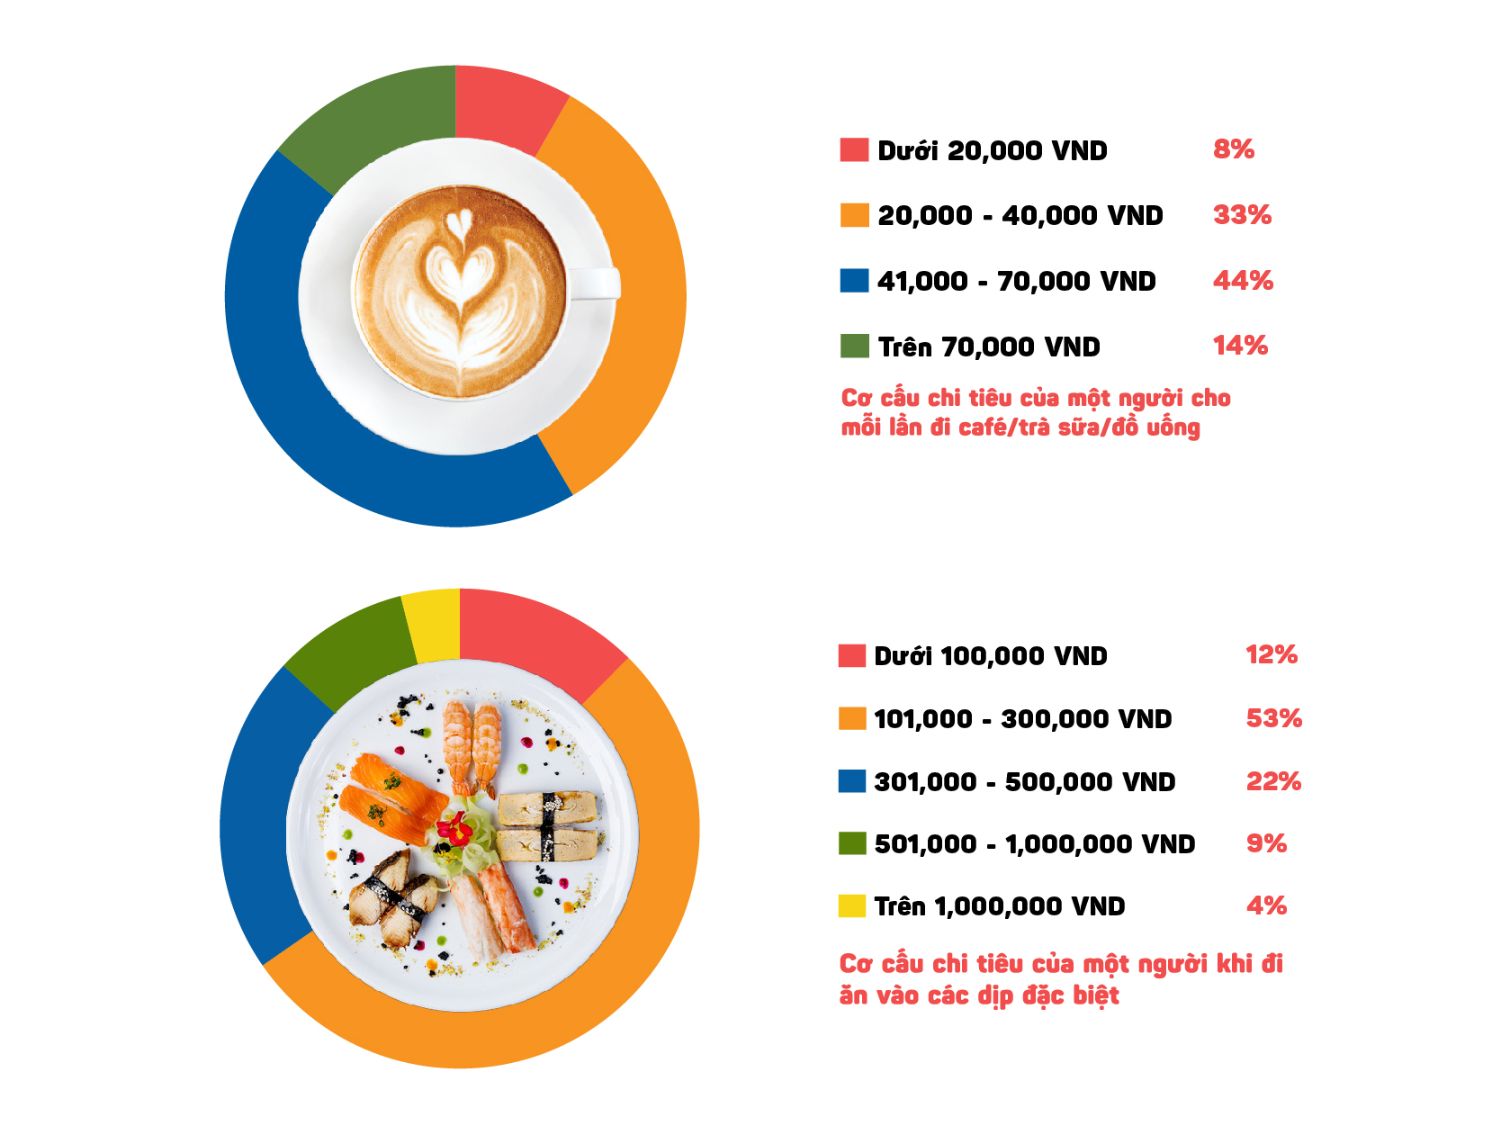 Cơ cấu chi tiêu của thực khách khi đi café và đi ăn dịp đặc biệt iPOS.vn công bố Báo cáo thị trường Kinh doanh ẩm thực tại Việt Nam 2022